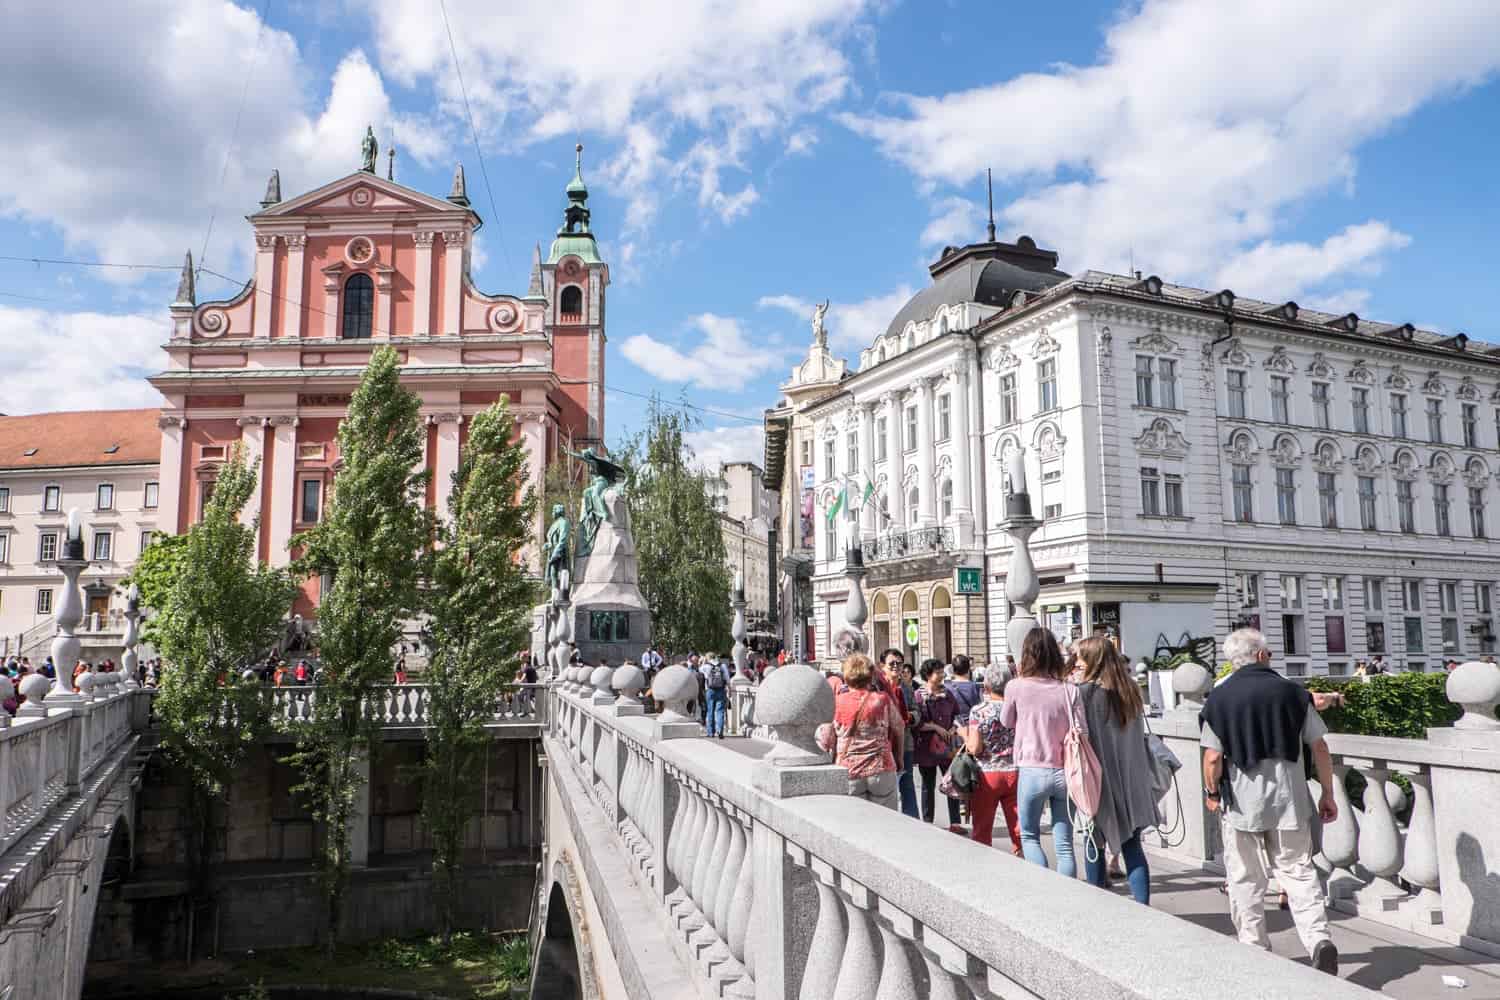 The Tromostovje Triple Bridge in Ljubljana Old Town, Capital of Slovenia